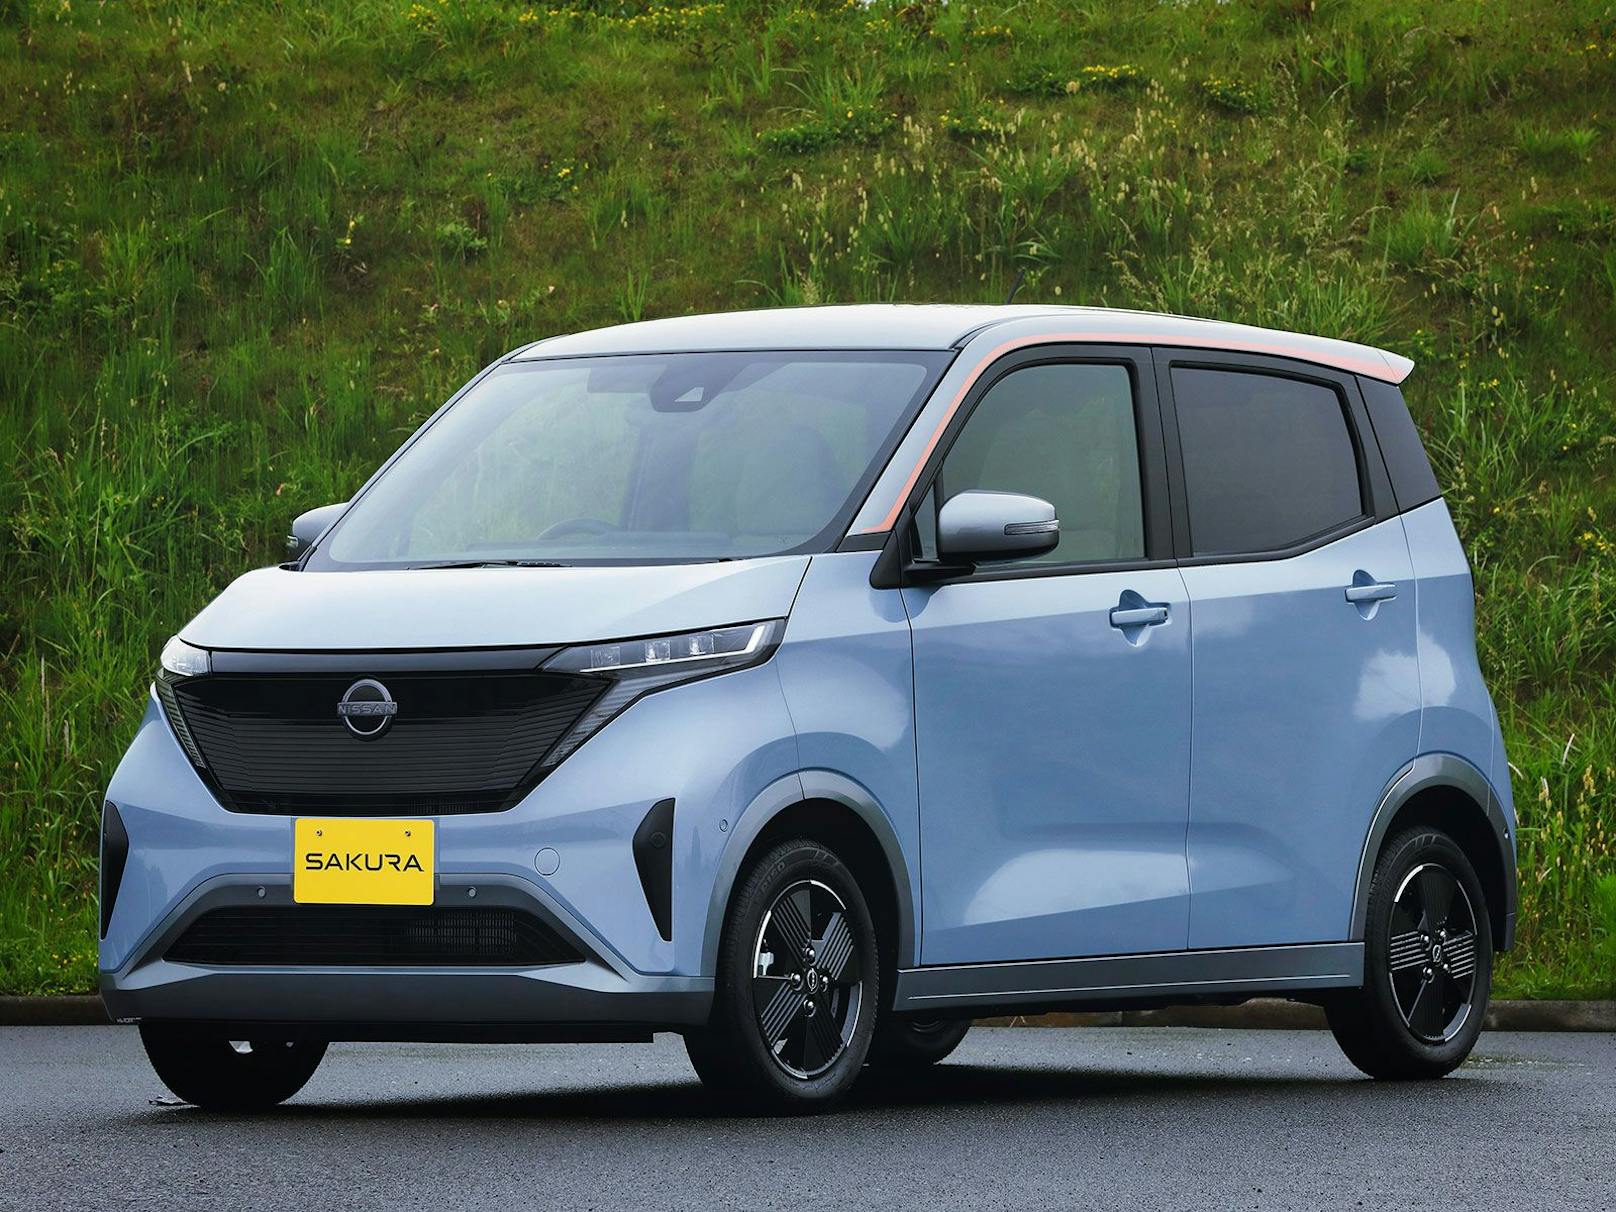 Nissan präsentiert neuen Elektro-Kleinwagen für Japan